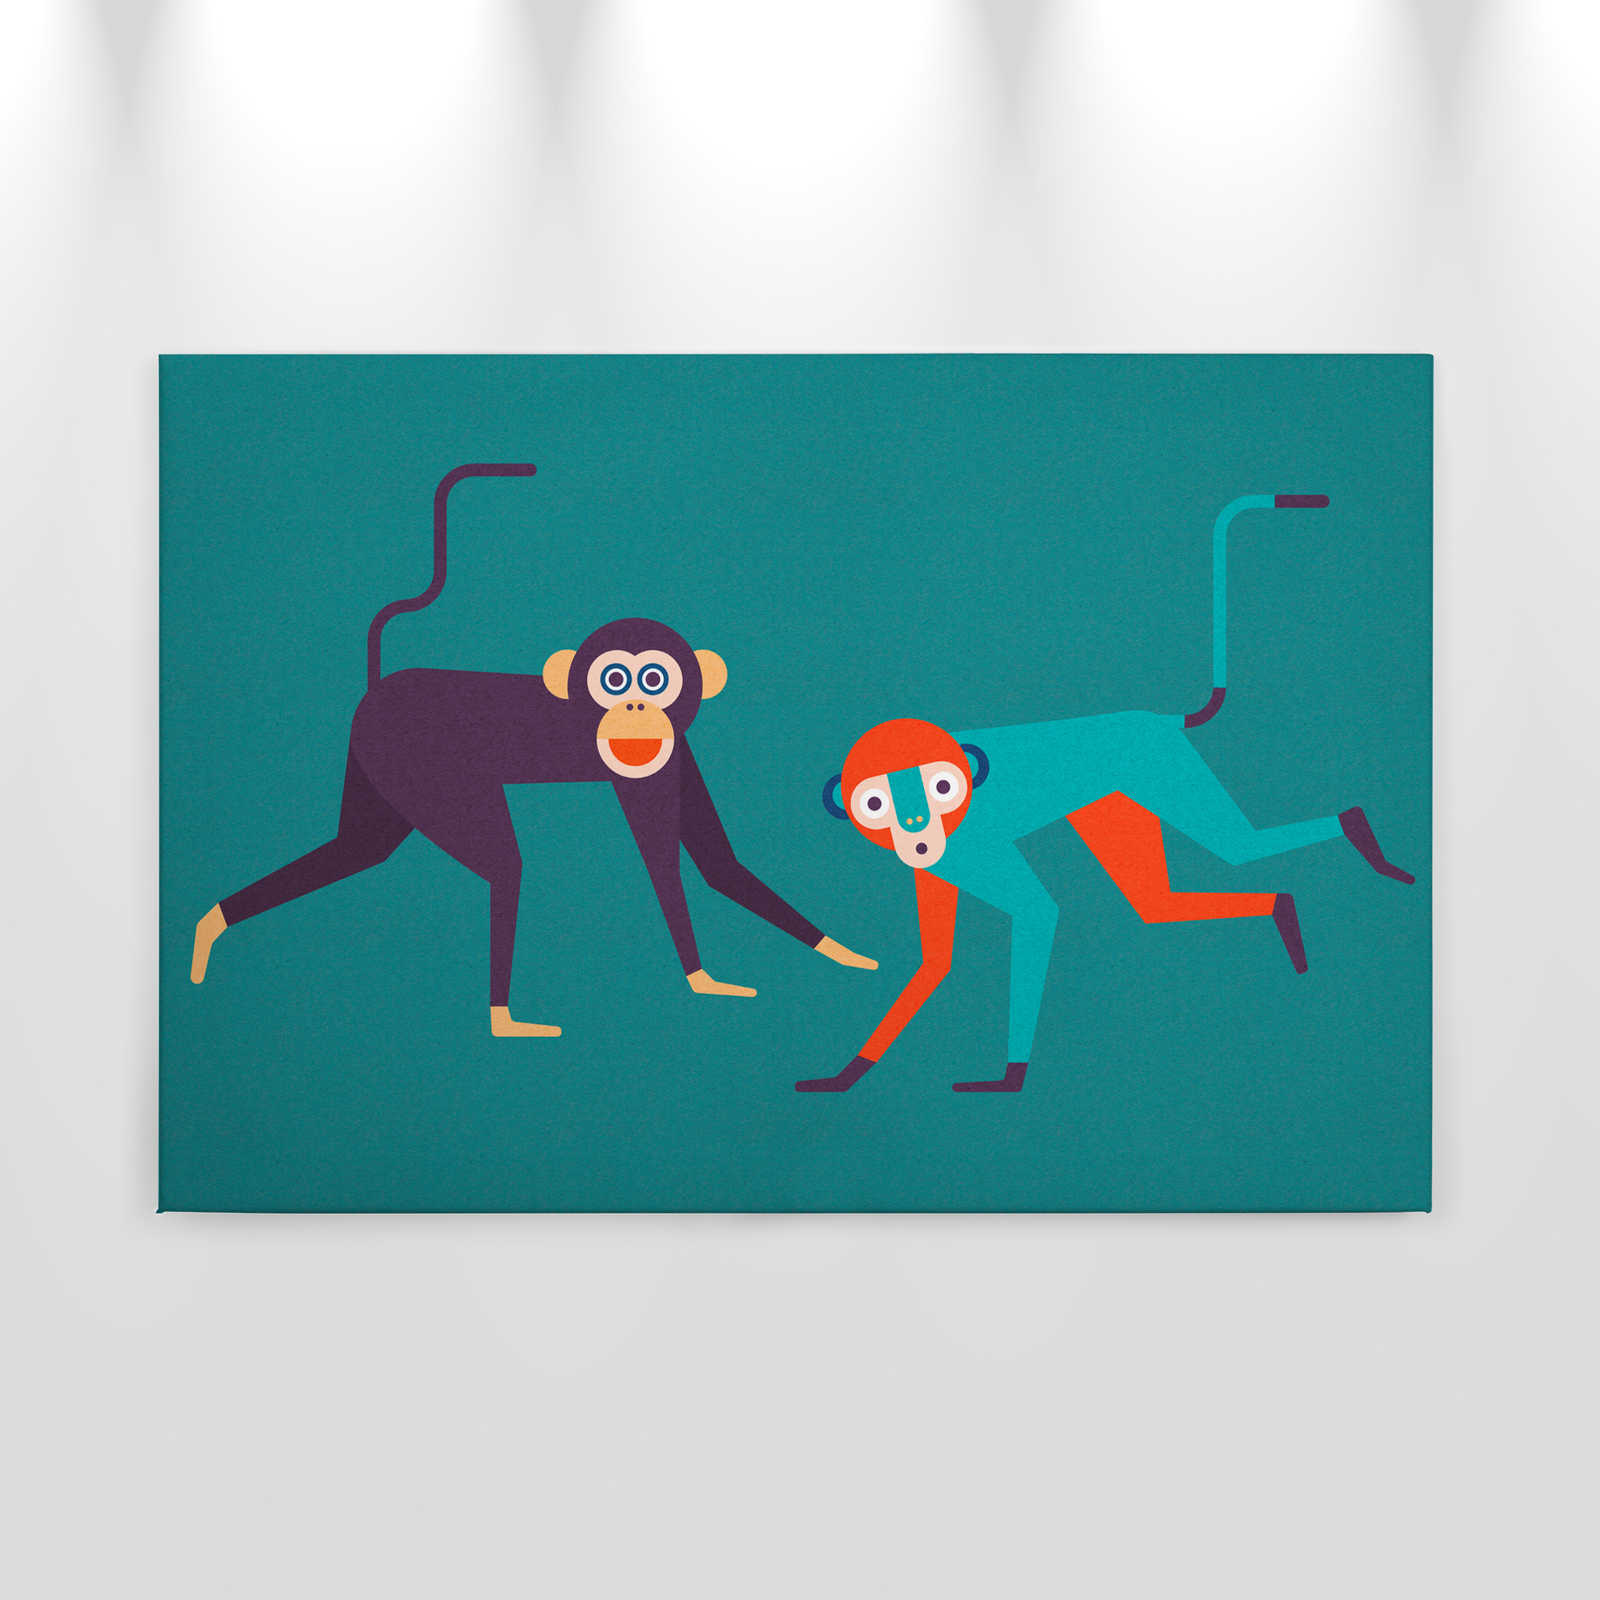             Monkey Business 1 - Quadro su tela con struttura in cartone, banda di scimmie in stile fumetto - 0,90 m x 0,60 m
        